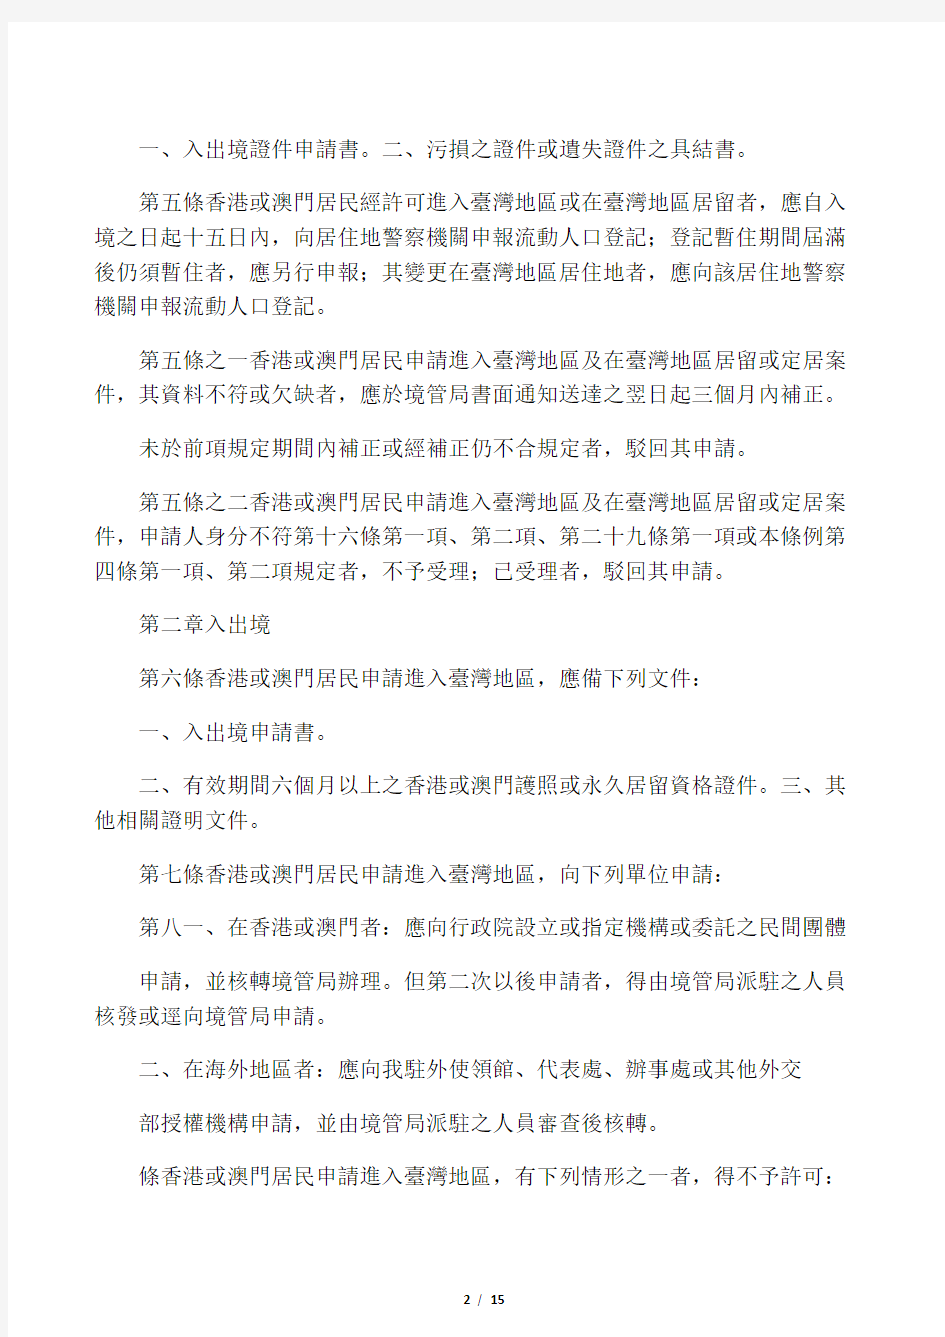 香港澳门居民进入台湾地区及居留定居许可办法